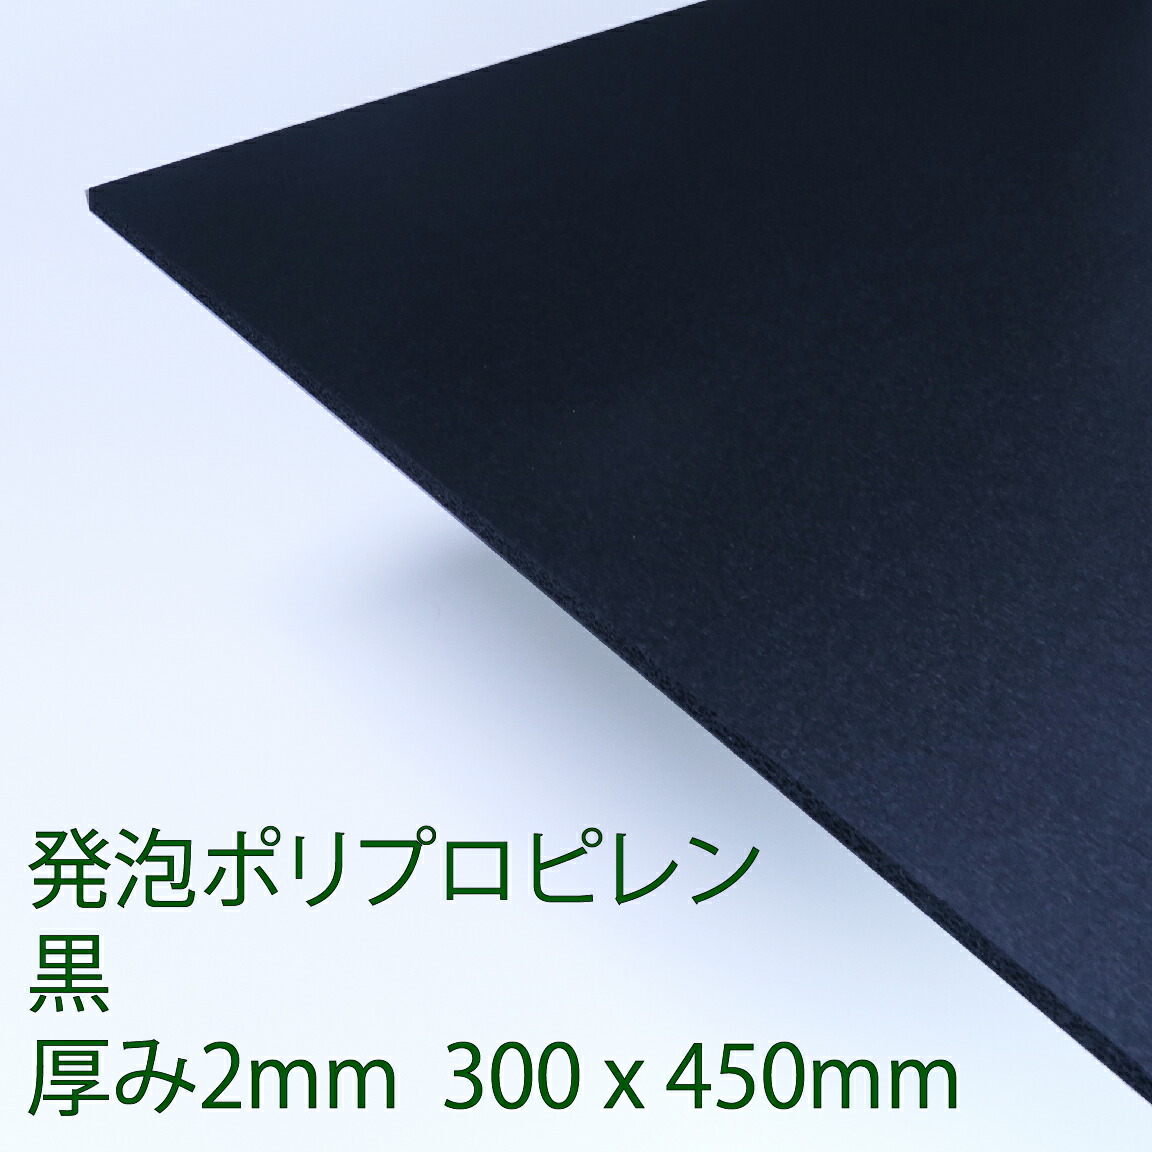 安い購入PPクラフトシート 発泡タイプ 黒(HP2) 厚み2mm 300mm×450mm ポリプロピレン 軽量 印刷可能 仕切り板 DIY アクリサンデー